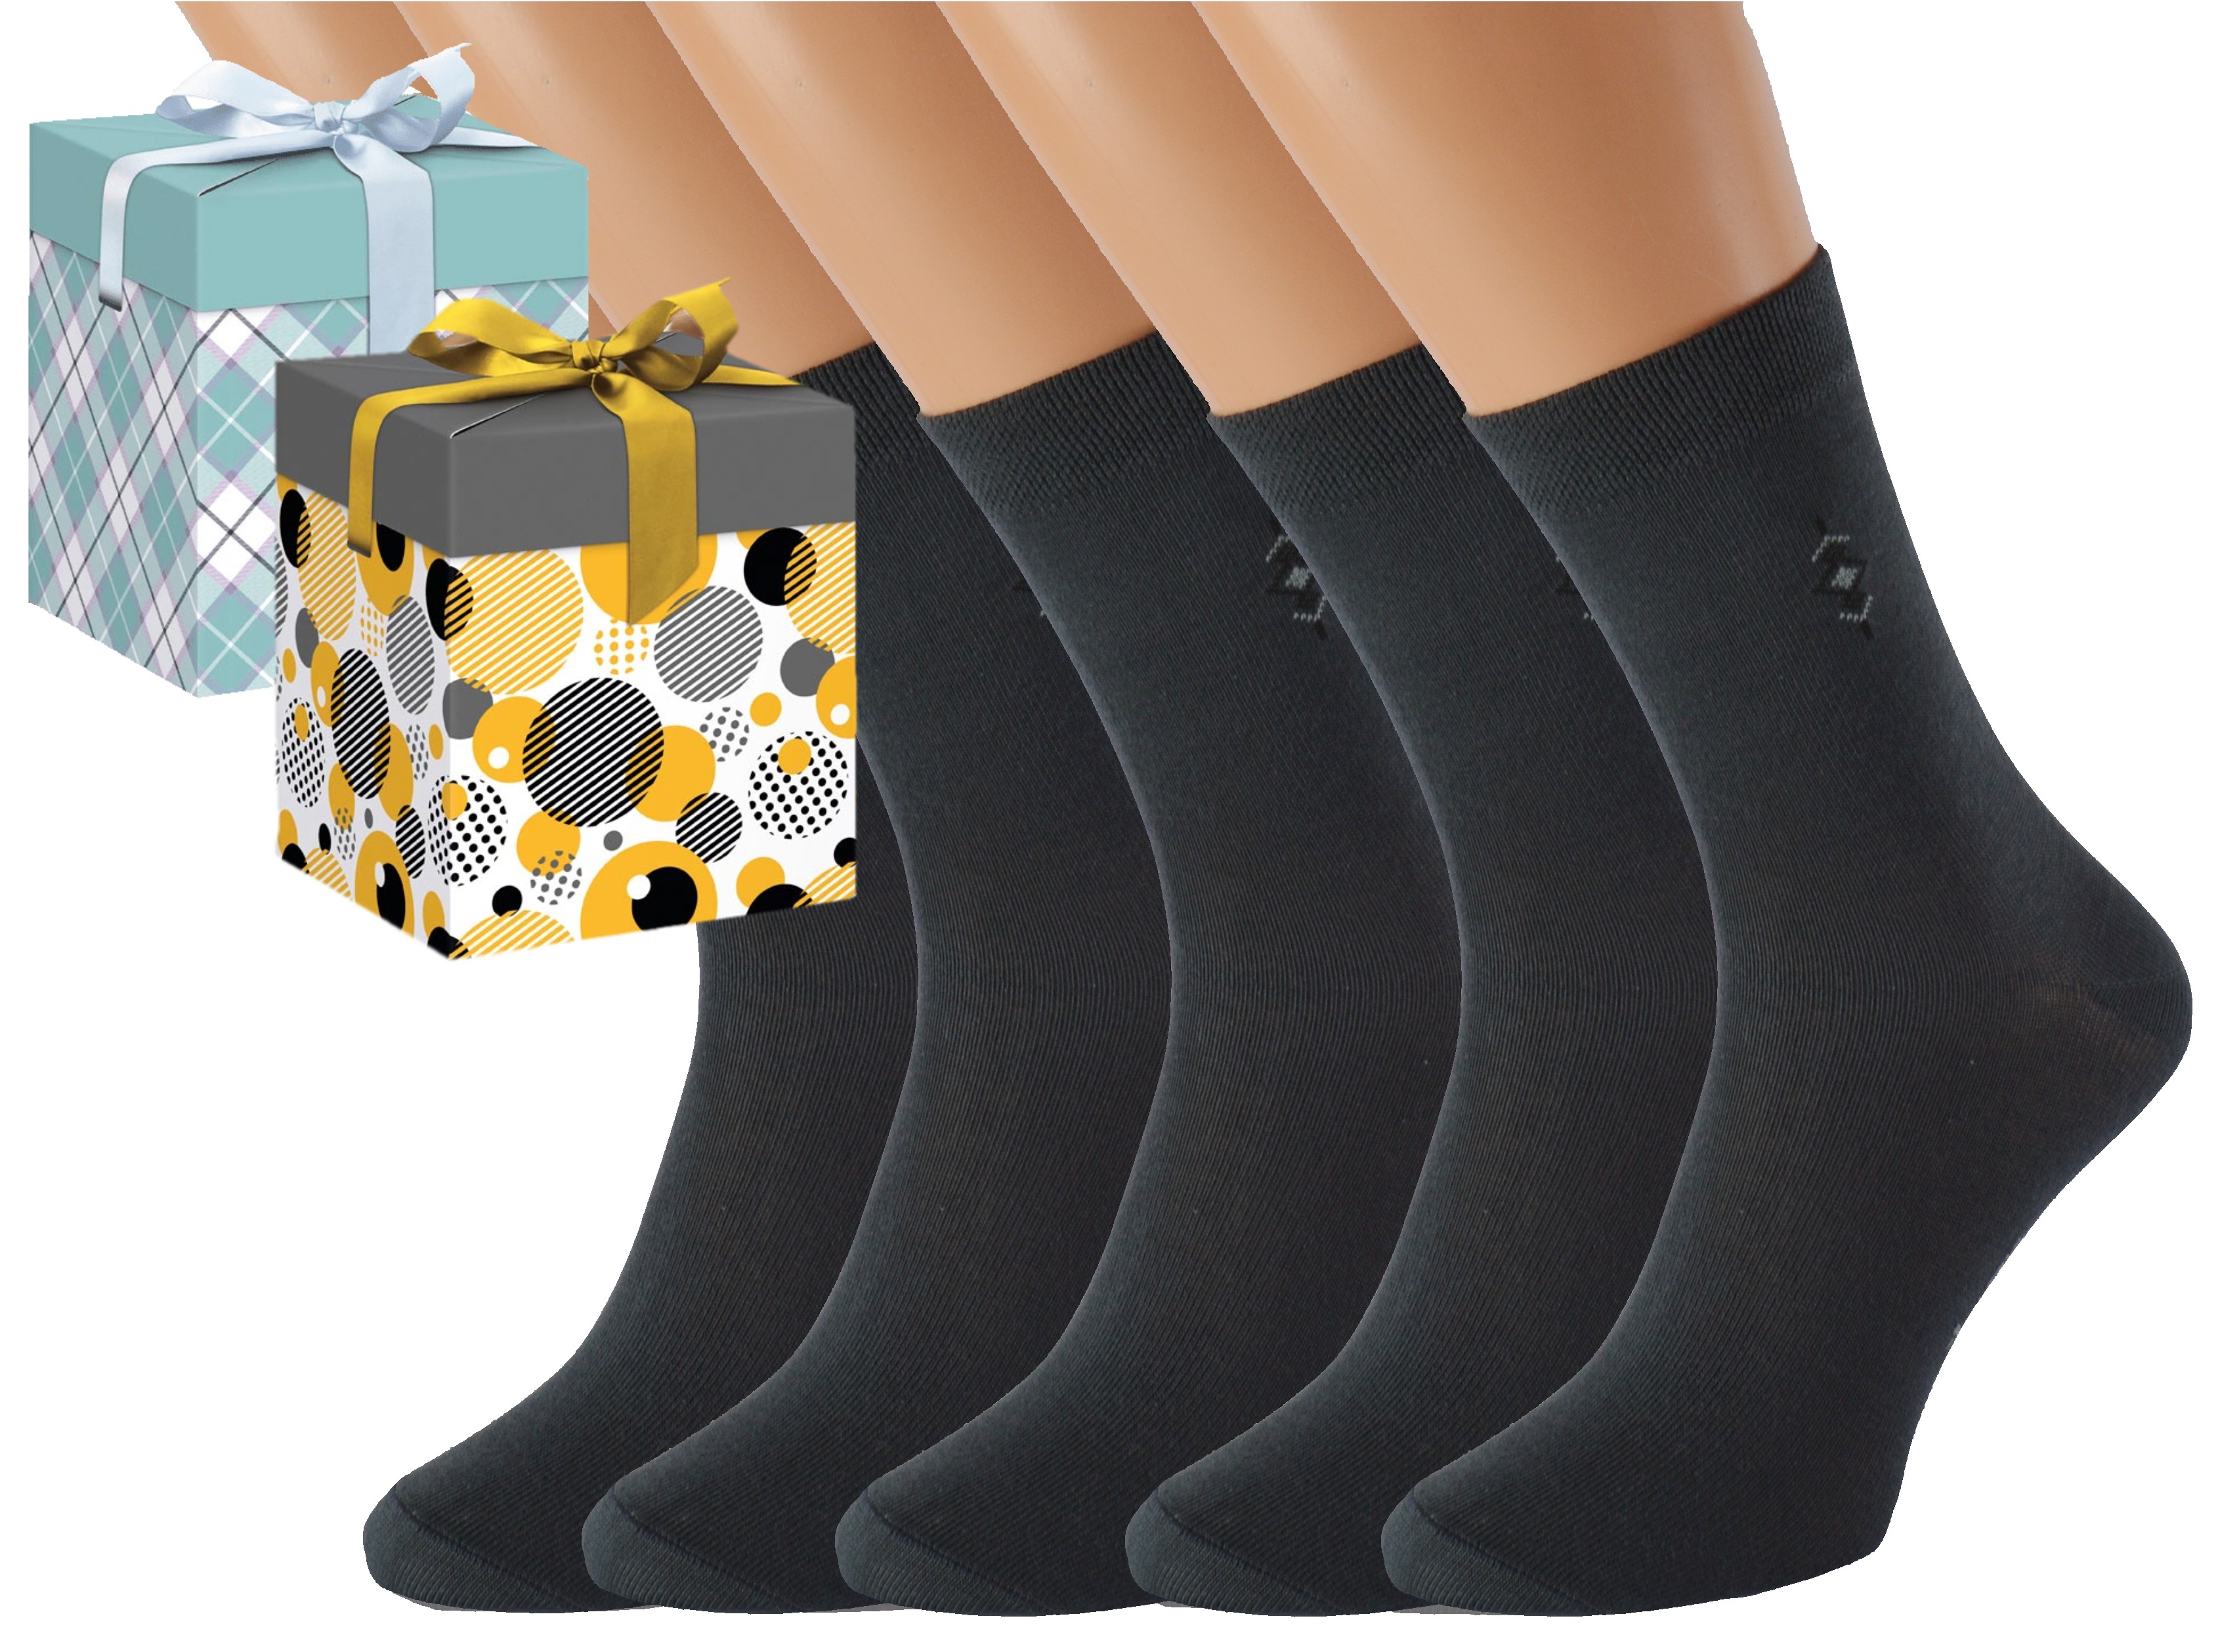 Dárkové balení 5 párů společenských ponožek BOBOLYC Barva: Tmavě šedé, Velikost: EUR 43-46 (UK 9-11), Zvolte variantu dárkového balení: Modrá s oky